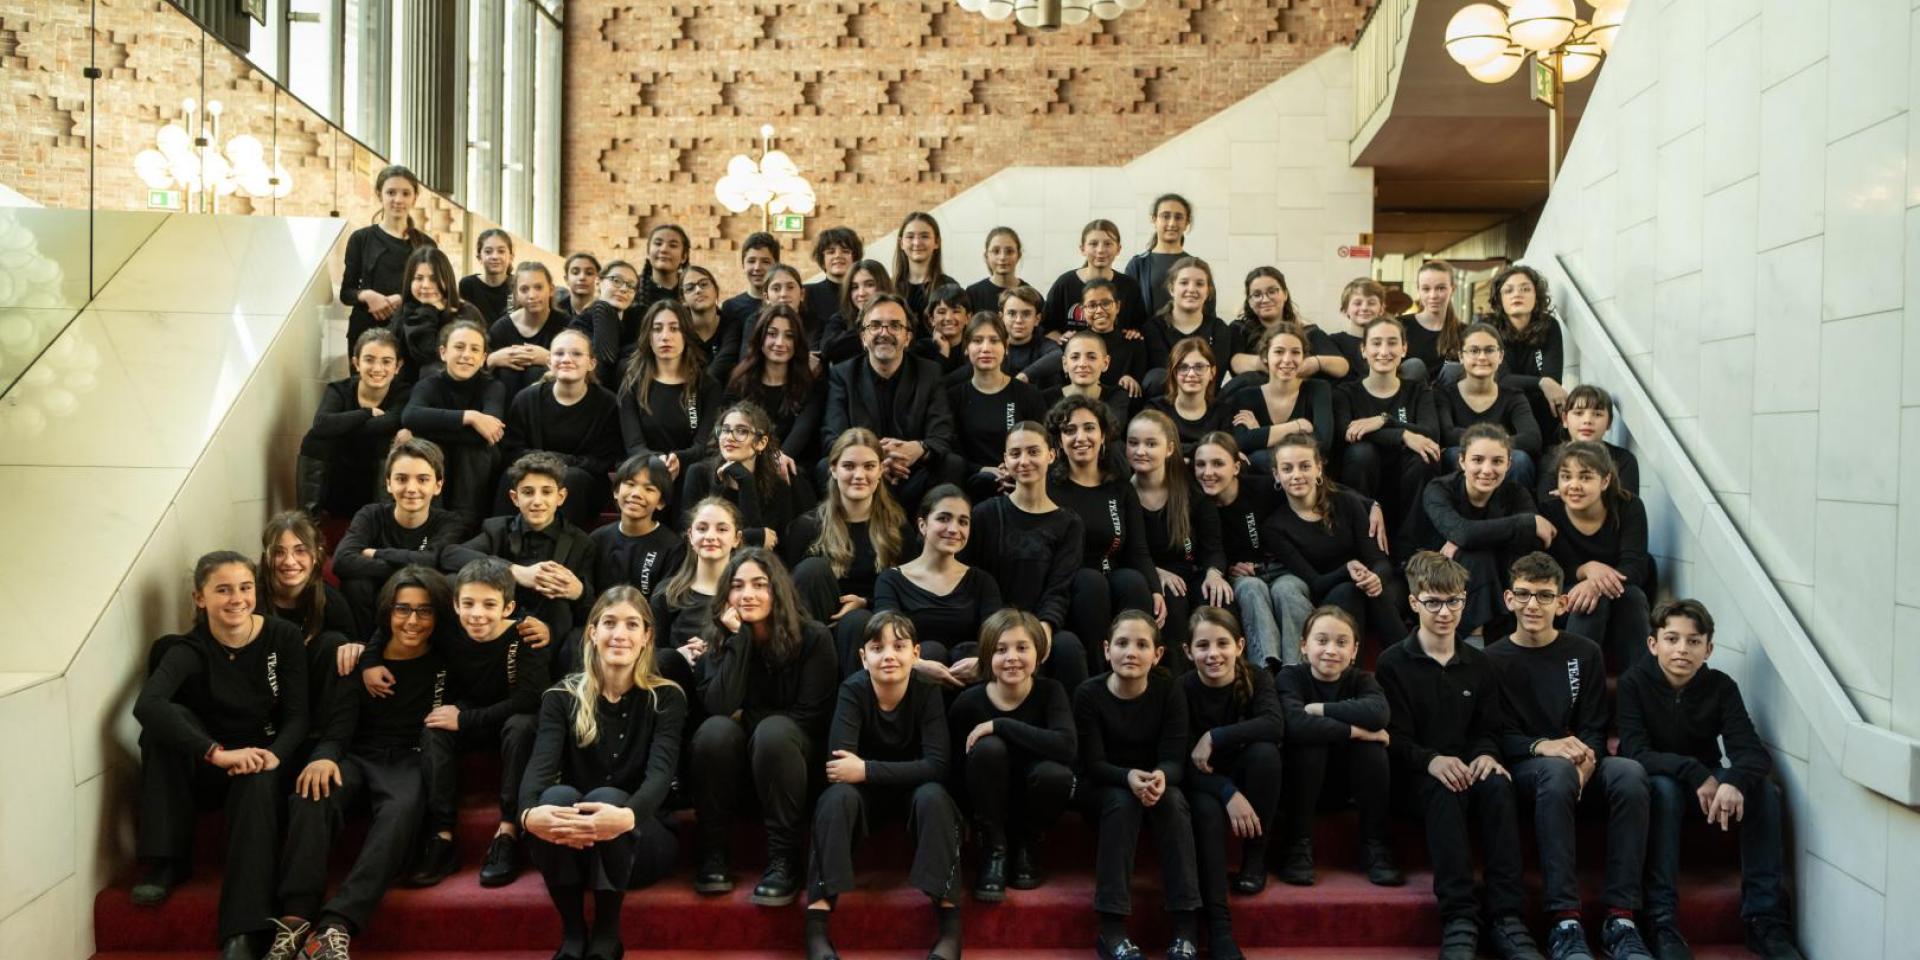 Il Coro di voci bianche Teatro Regio Torino con al centro il maestro Claudio Fenoglio (foto Andrea Macchia)